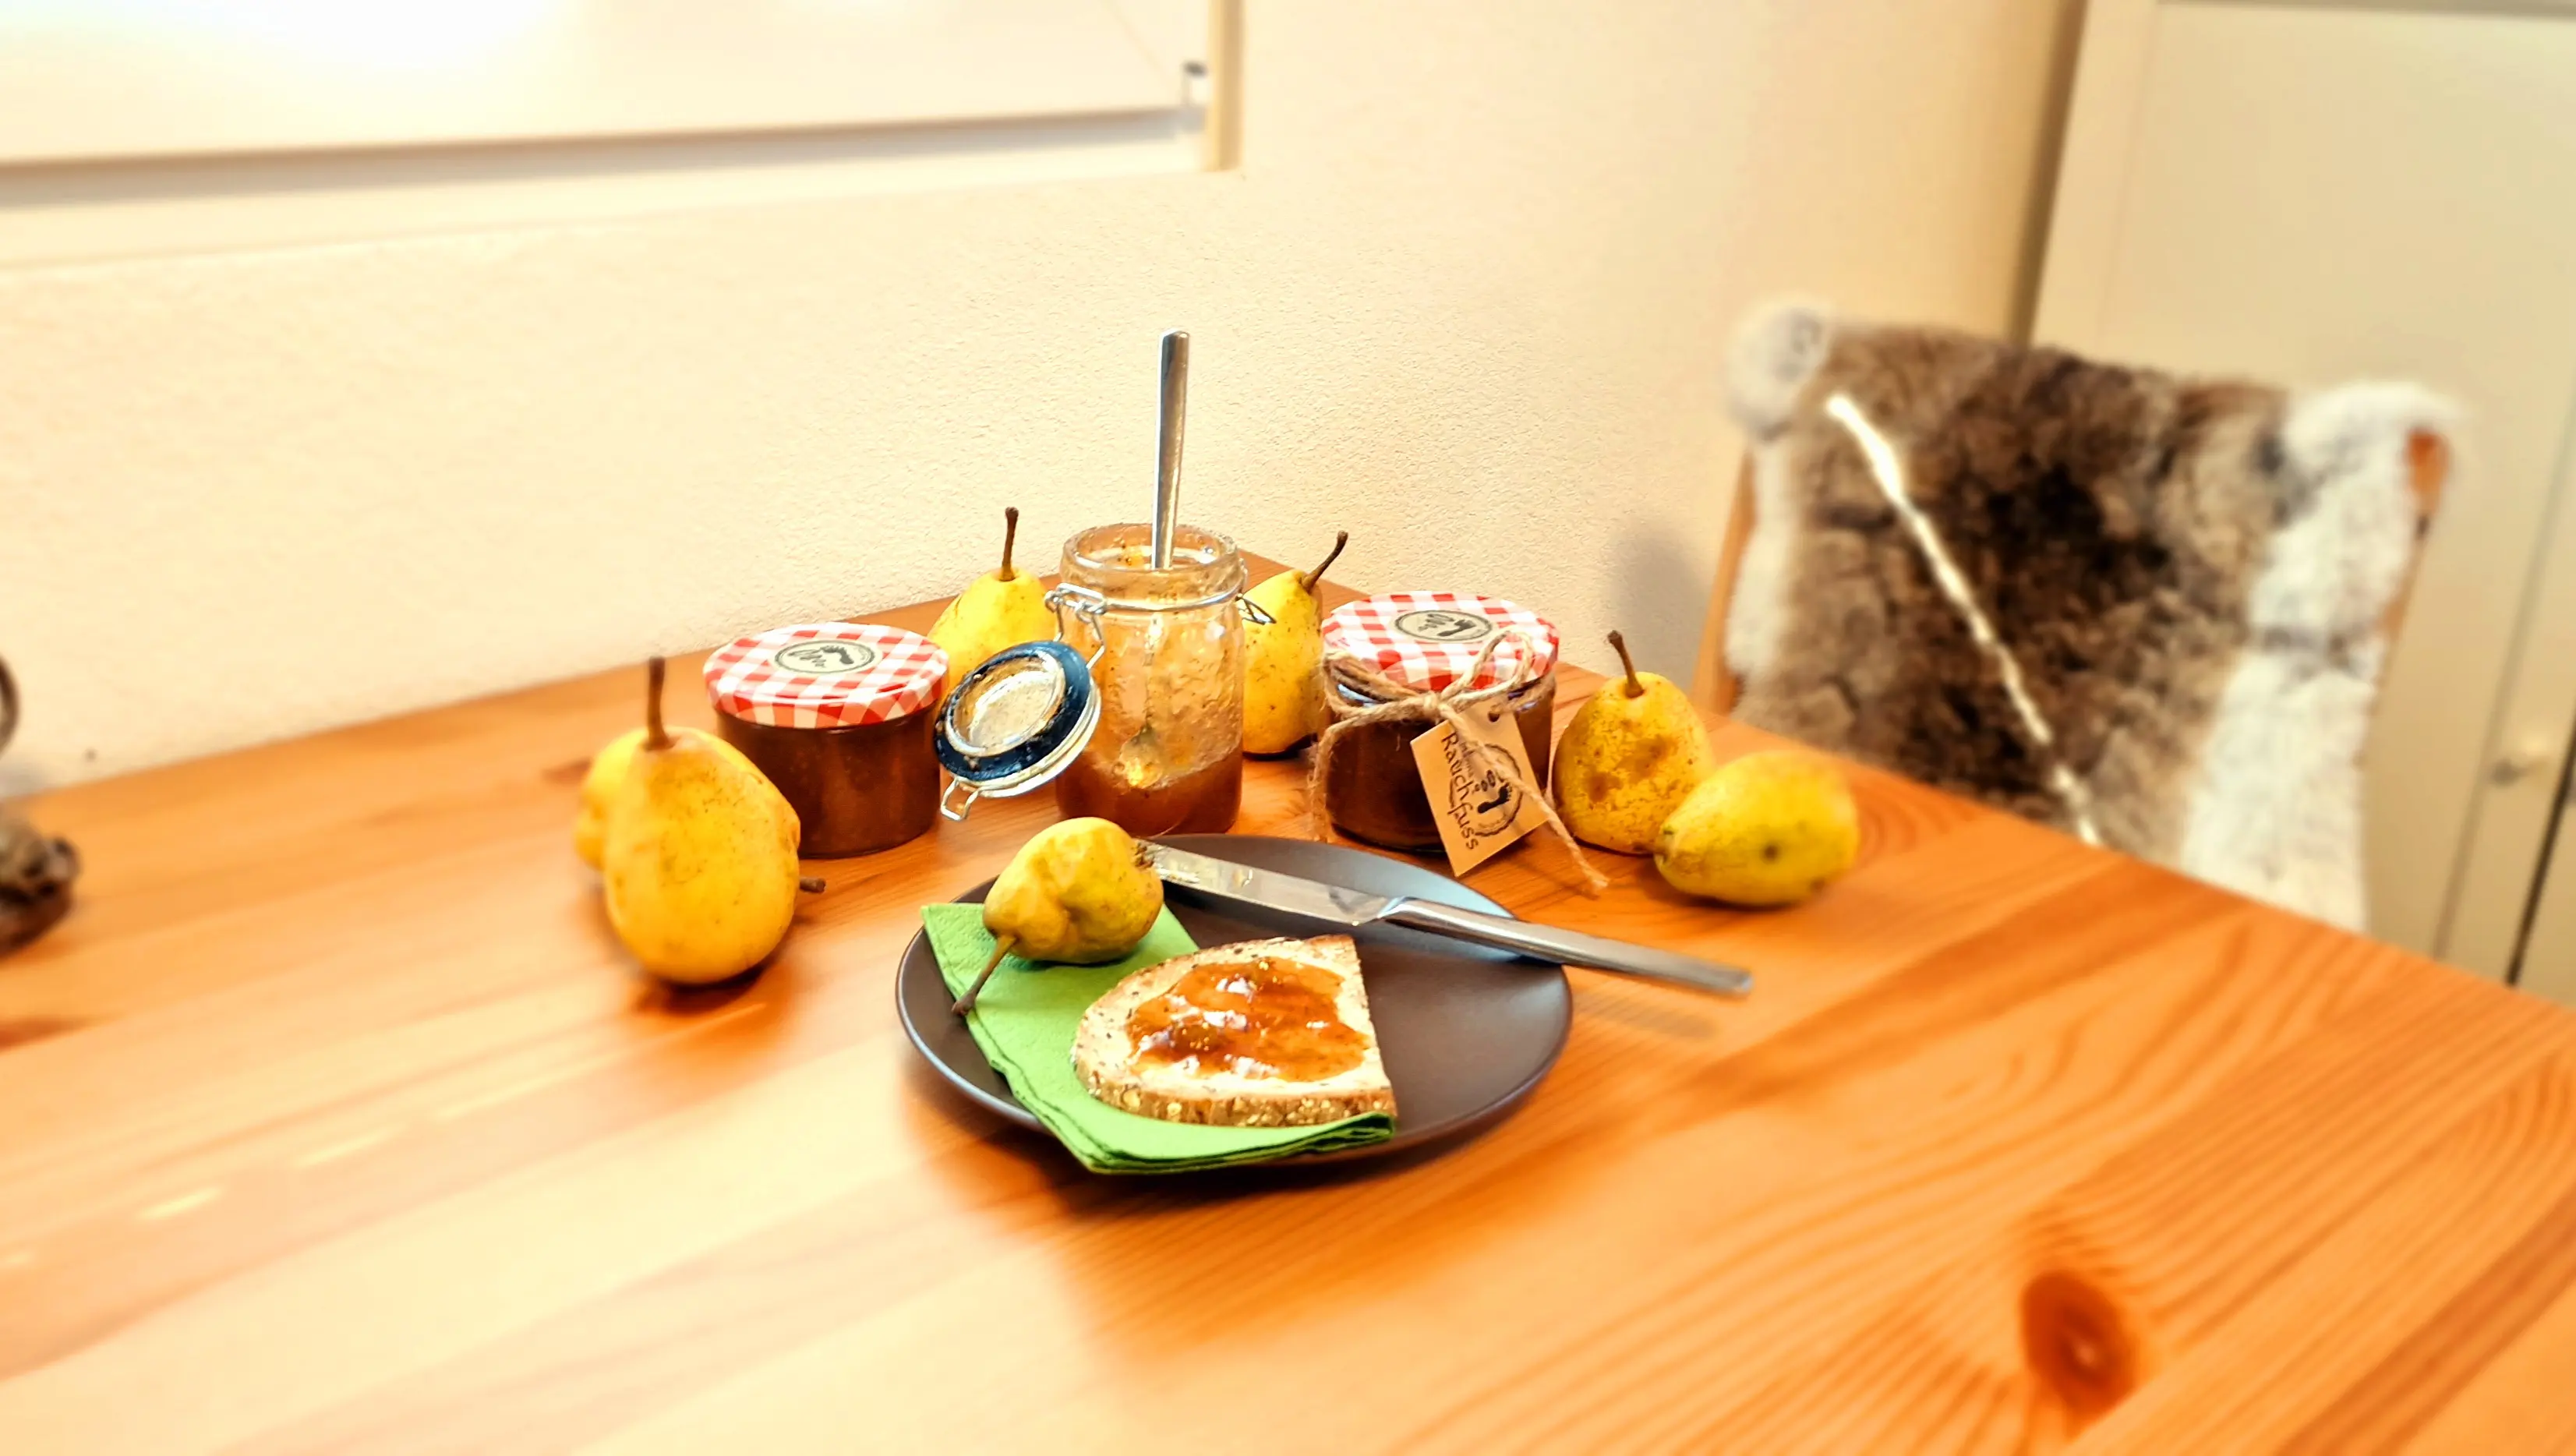 Ein Holztisch mit 4 verschiedenen grössen von Einmachgläsern, ein Teller mit einem Brombeerkonfitürebrot und dekoriet mit frischen Brombeeren und deren Blätter